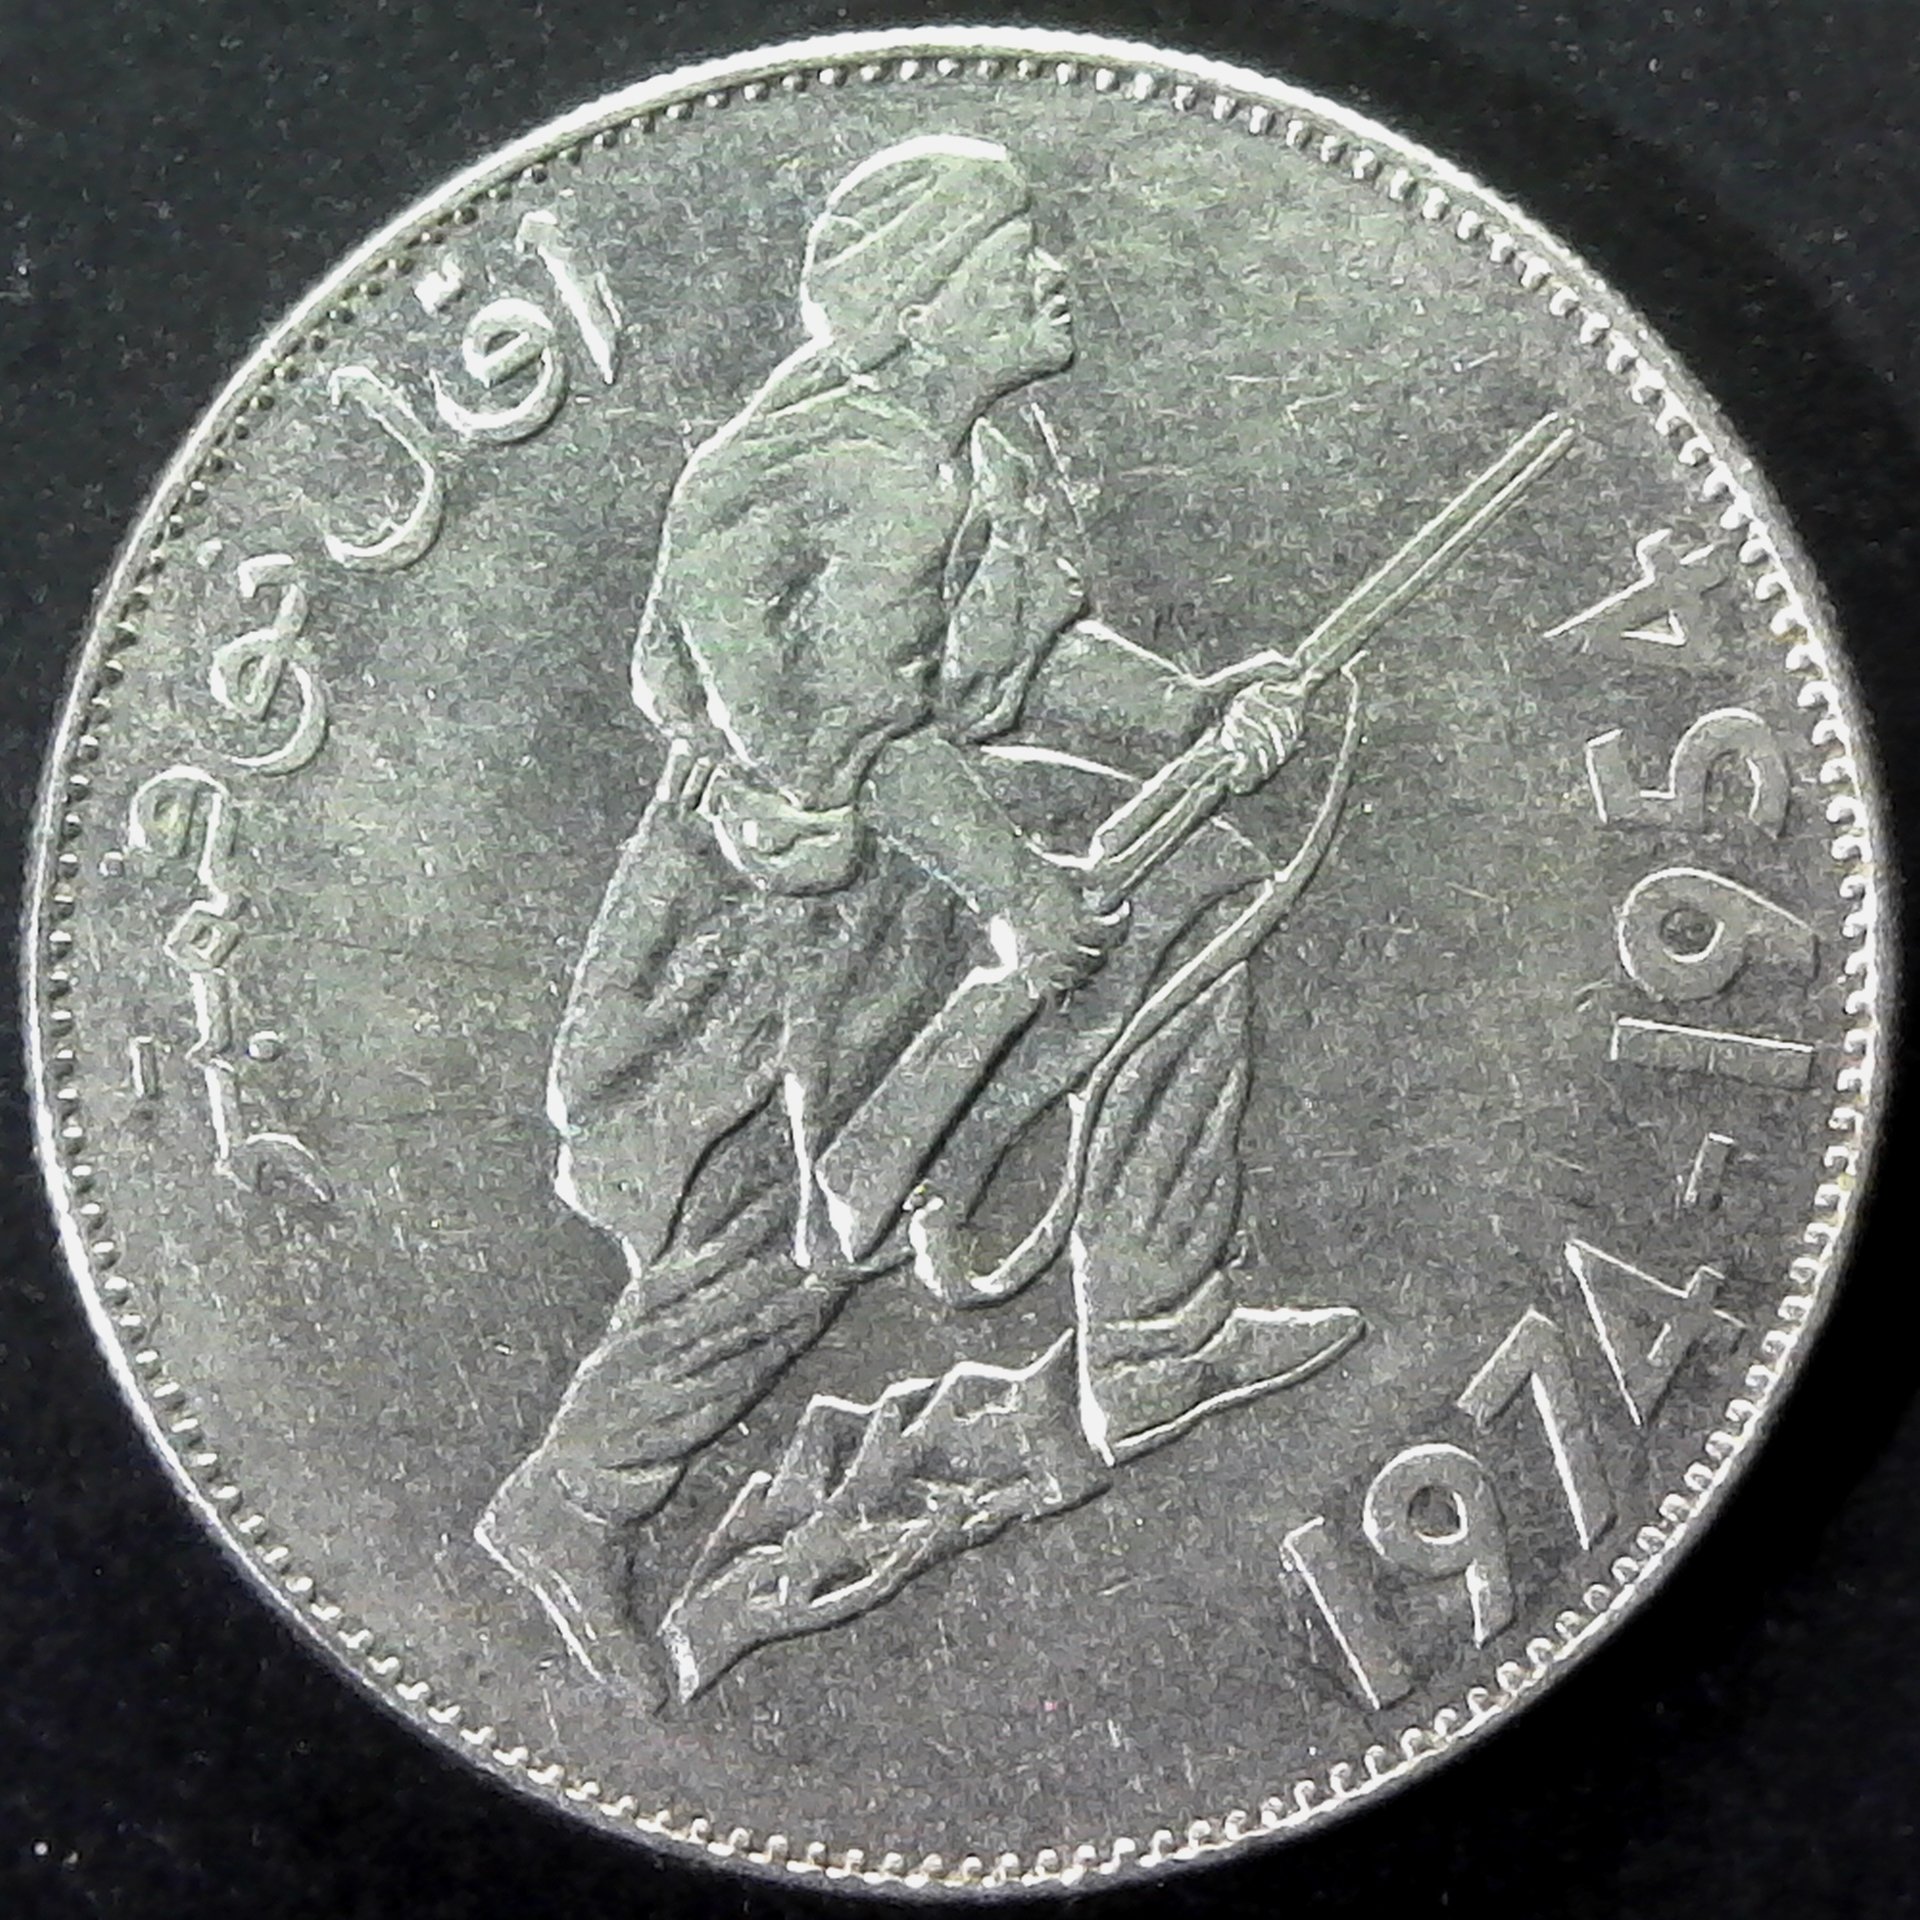 Algeria 5 Dinars 1974 obv.jpg